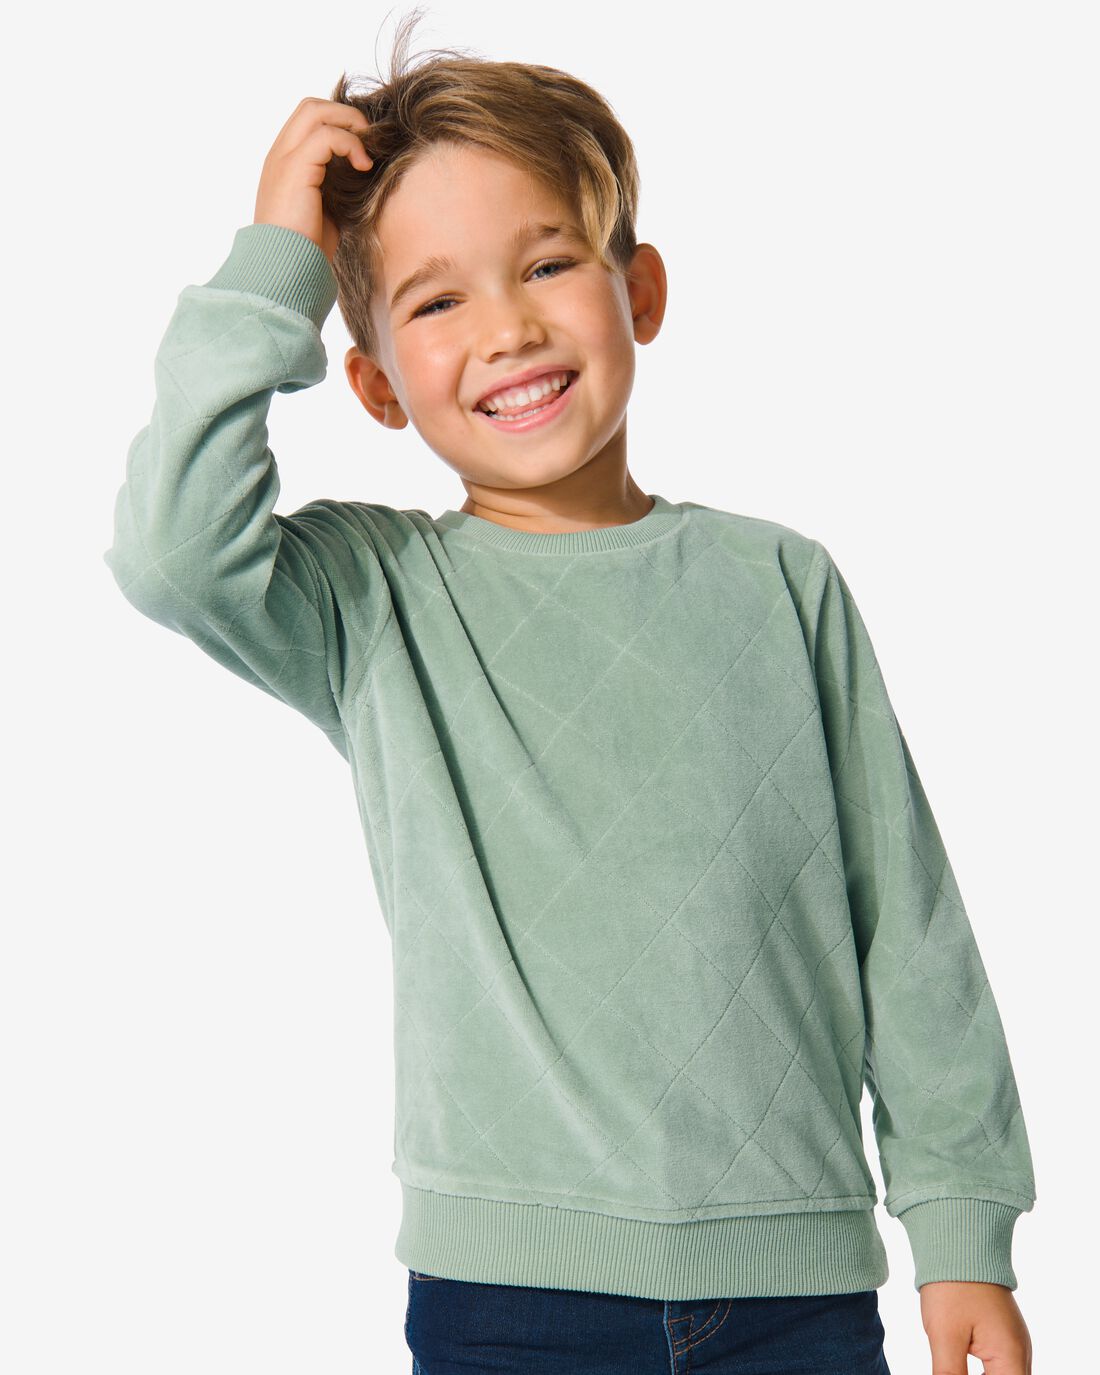 HEMA Kinder Sweater Velours Groen (groen)